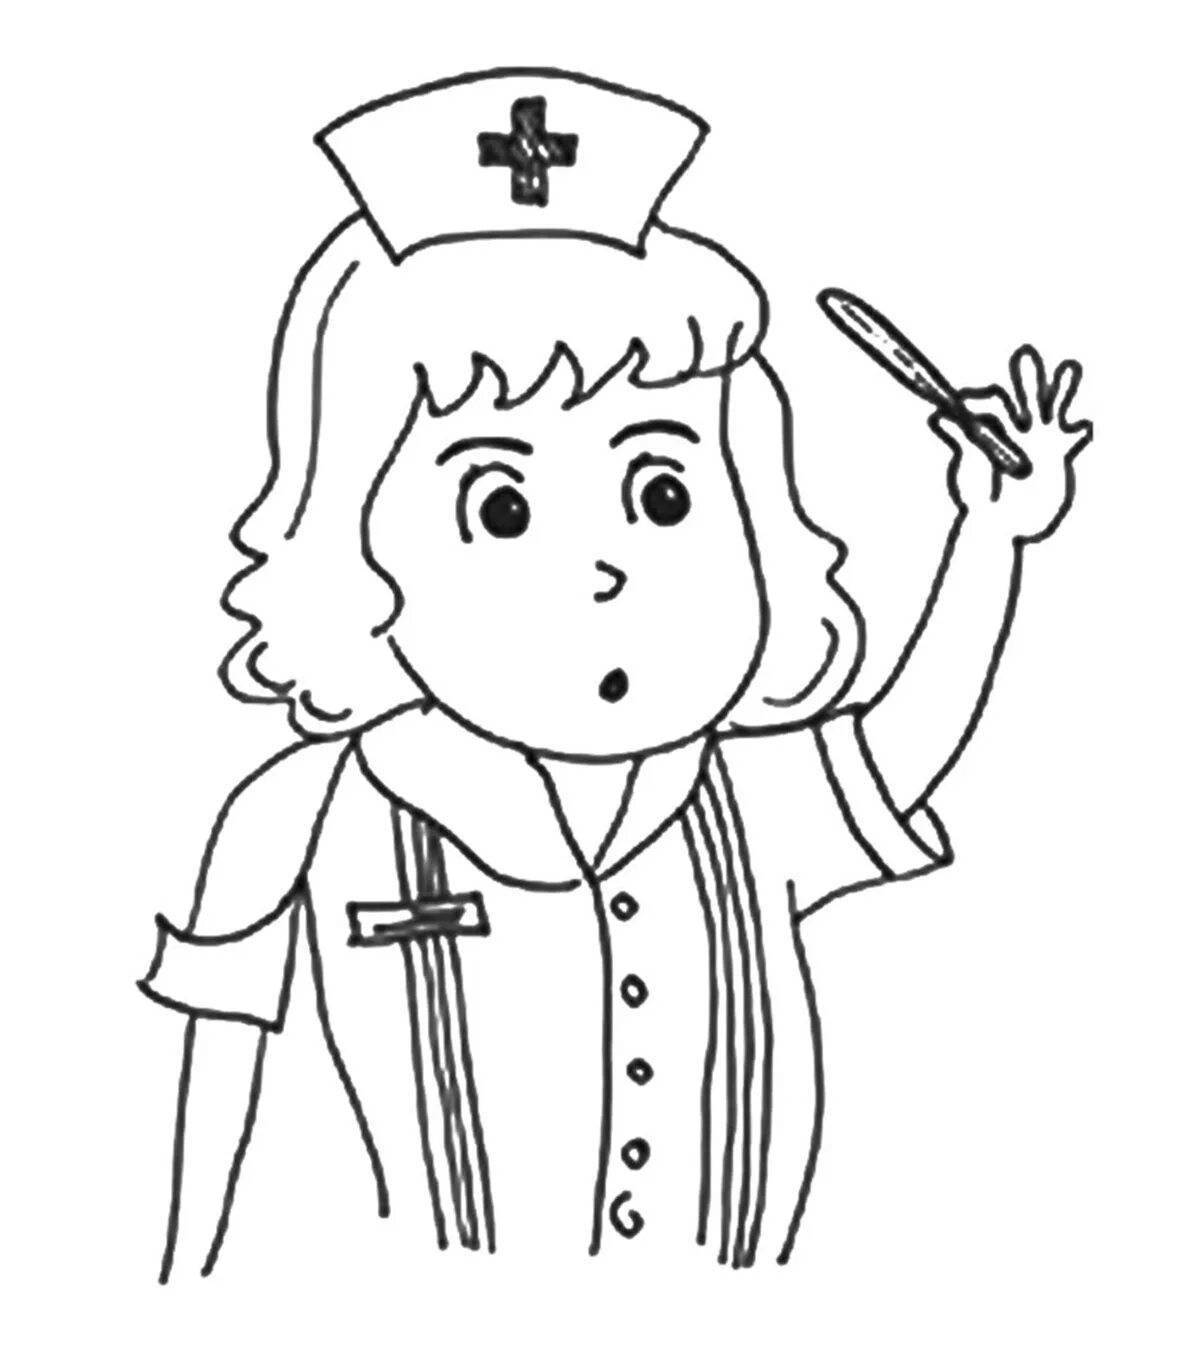 Kind nurse coloring for kids